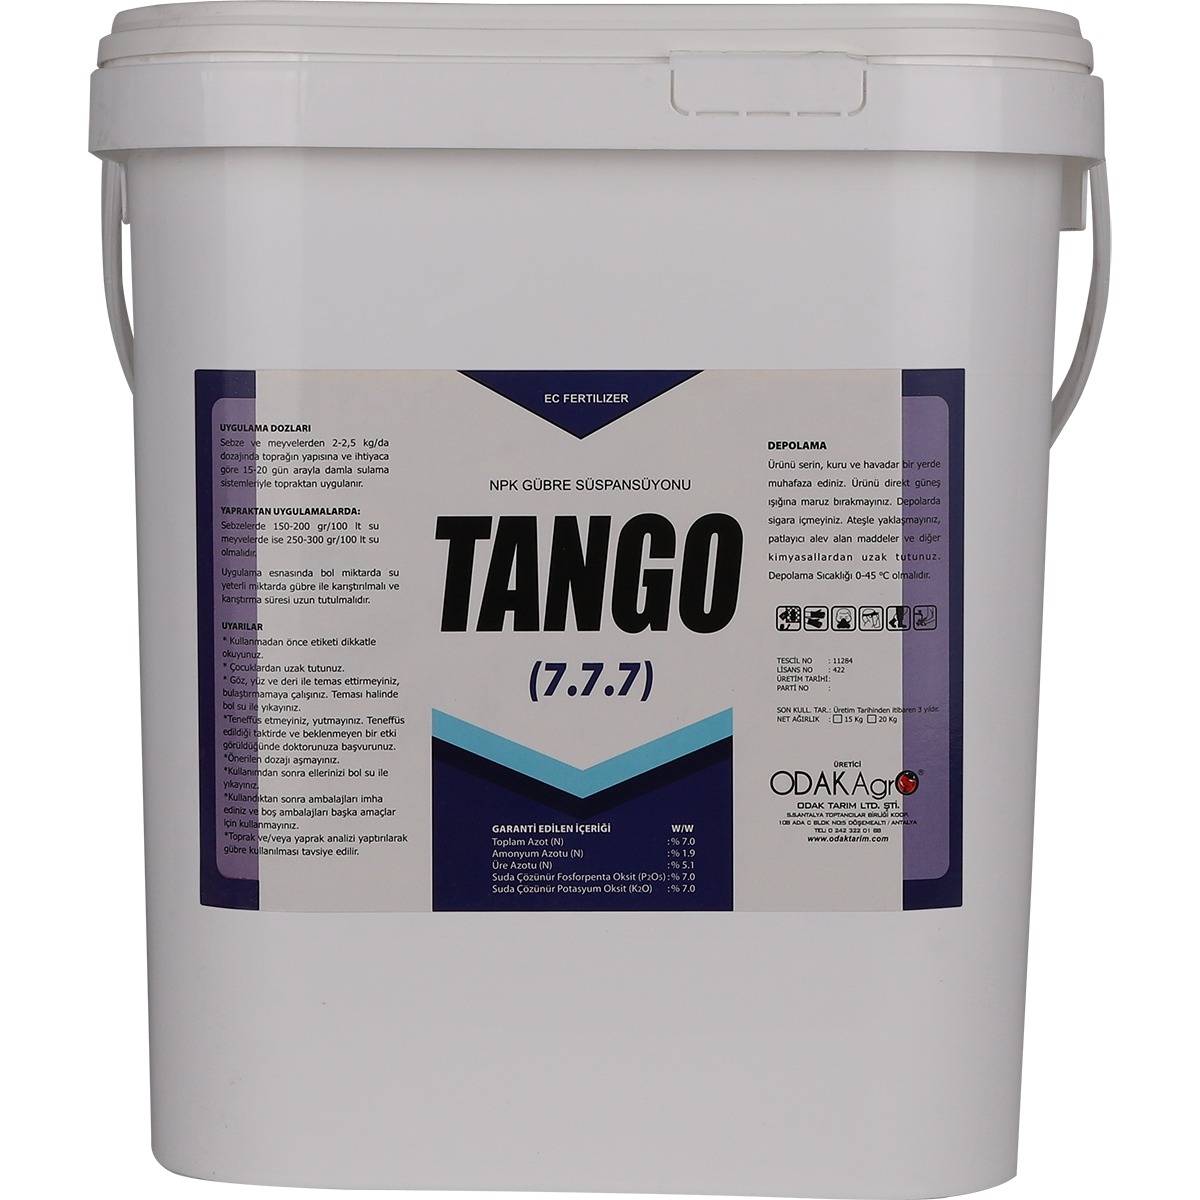 TANGO Bucket Fertilizer